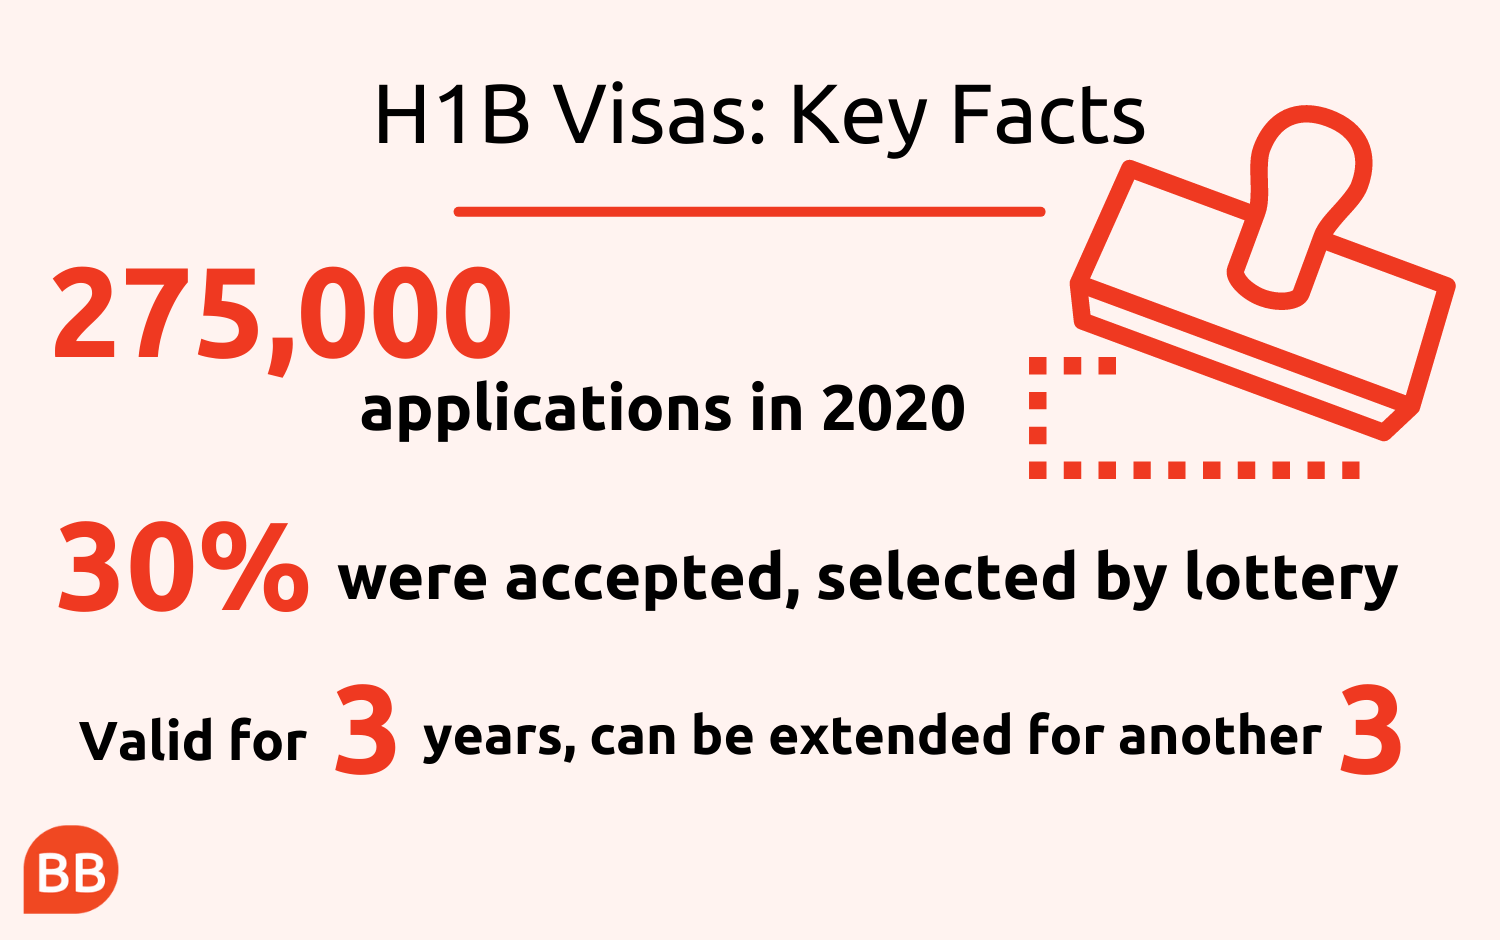 What Is An H1B Visa?